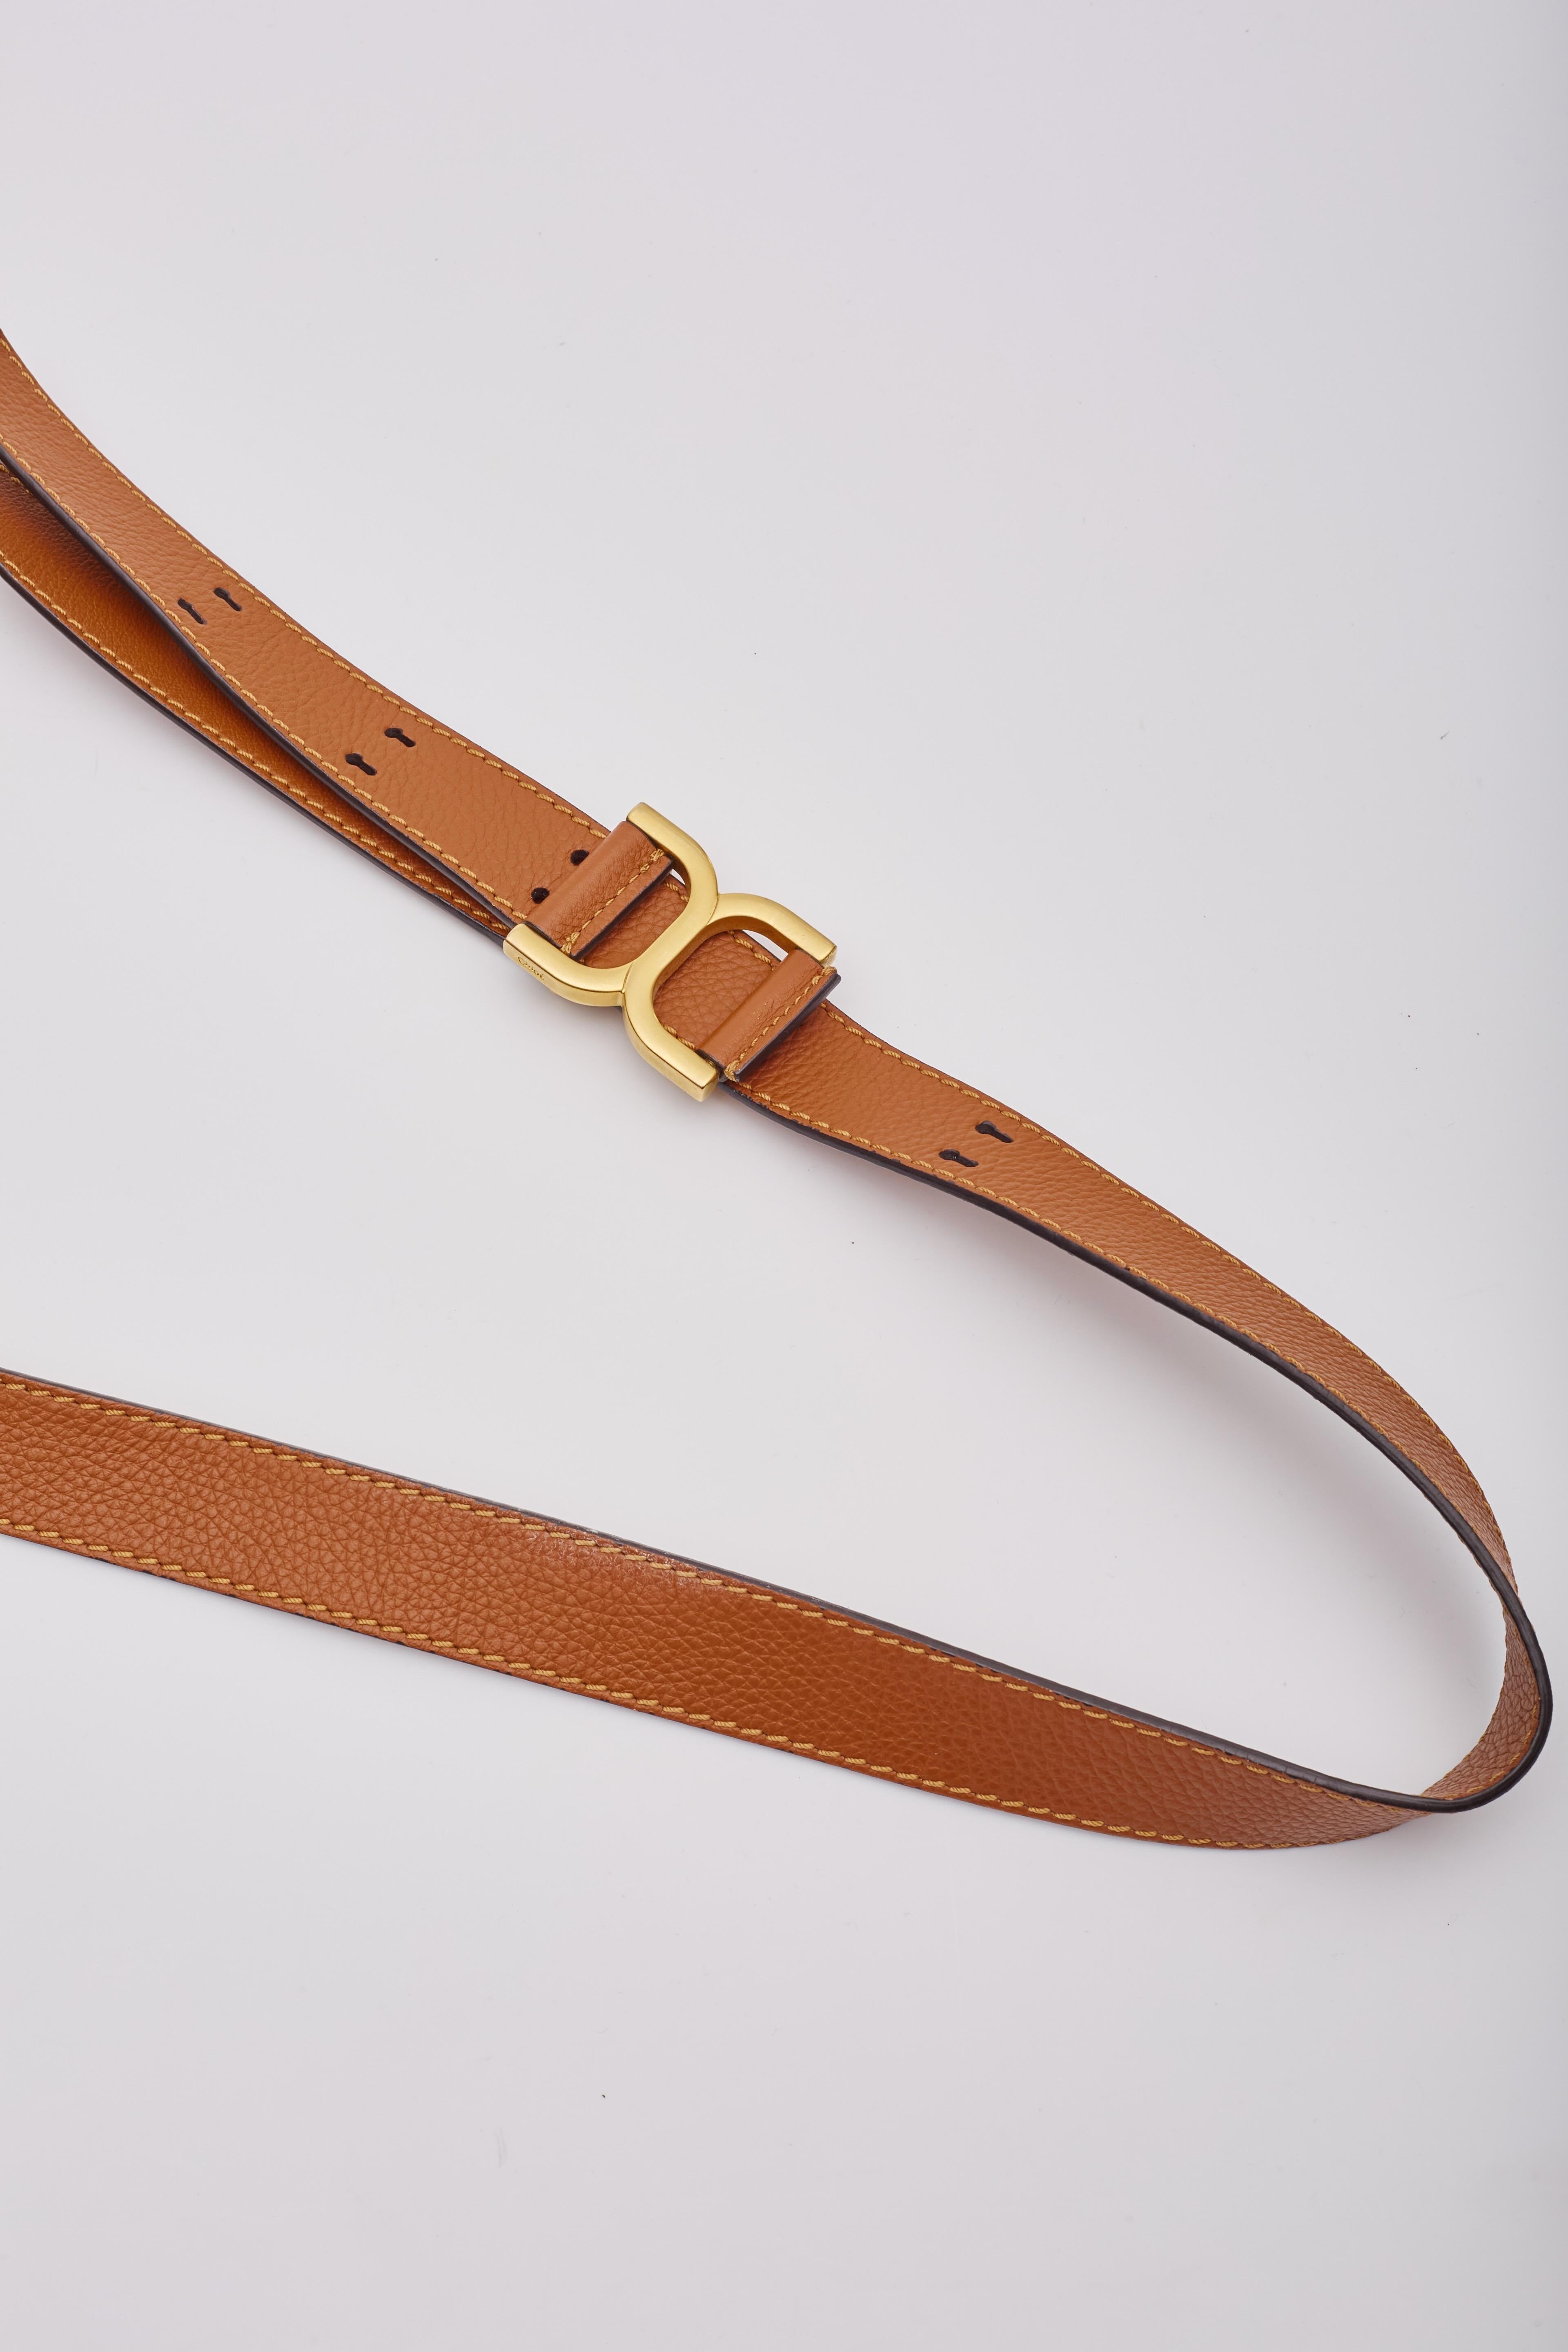 Chloe Caramel Leather Marcie Crossbody Bag Medium For Sale 7